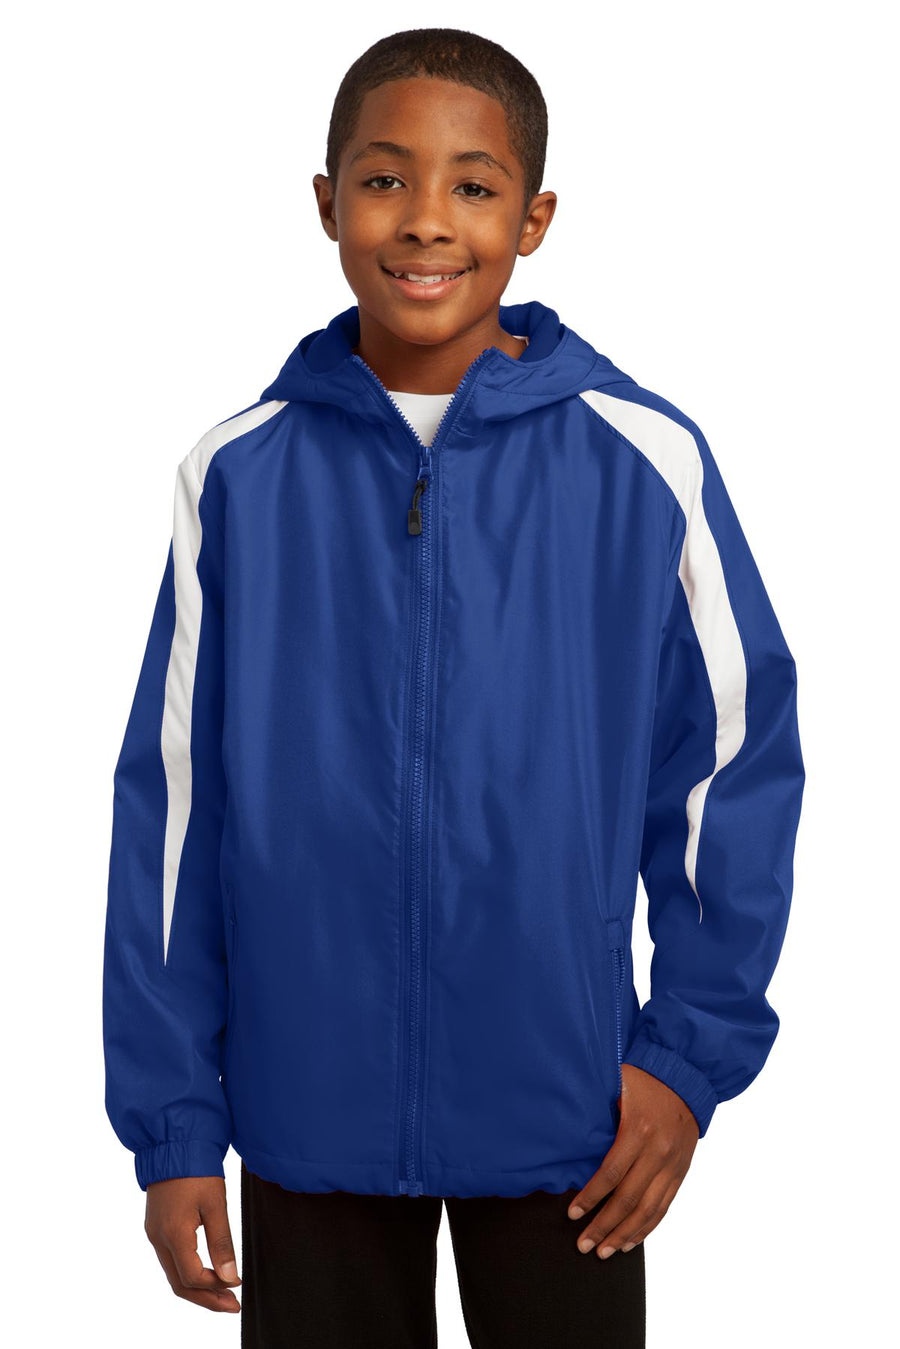 Sport-Tek Youth Fleece-Lined Colorblock Jacket.